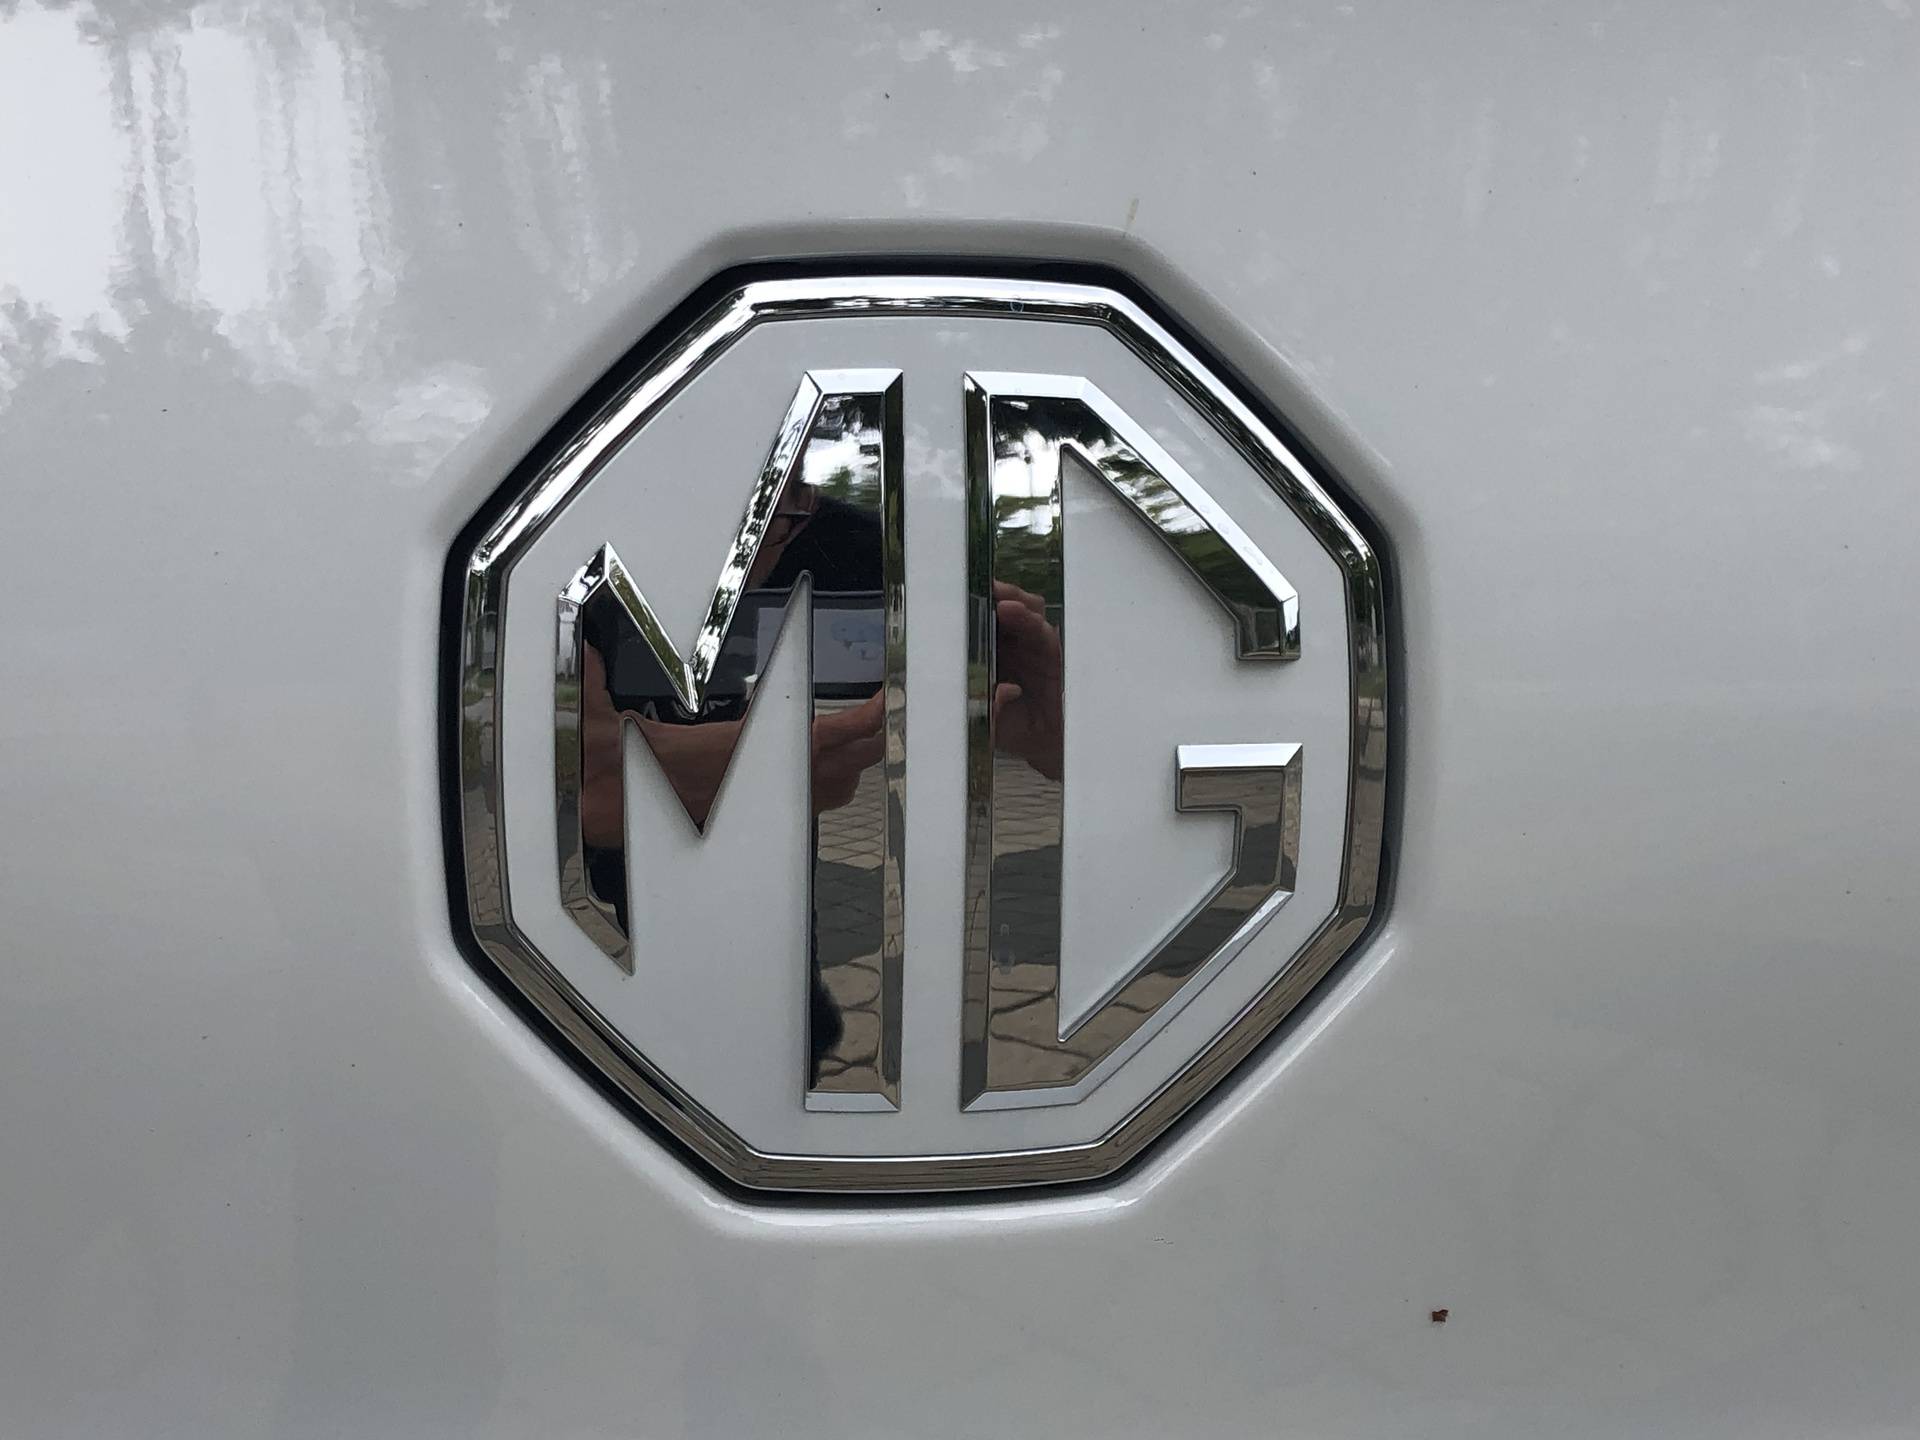 Kineski MG ZS EV je najjeftiniji električni SUV u klasi i unatoč tome pokazao se kao vrlo dobar